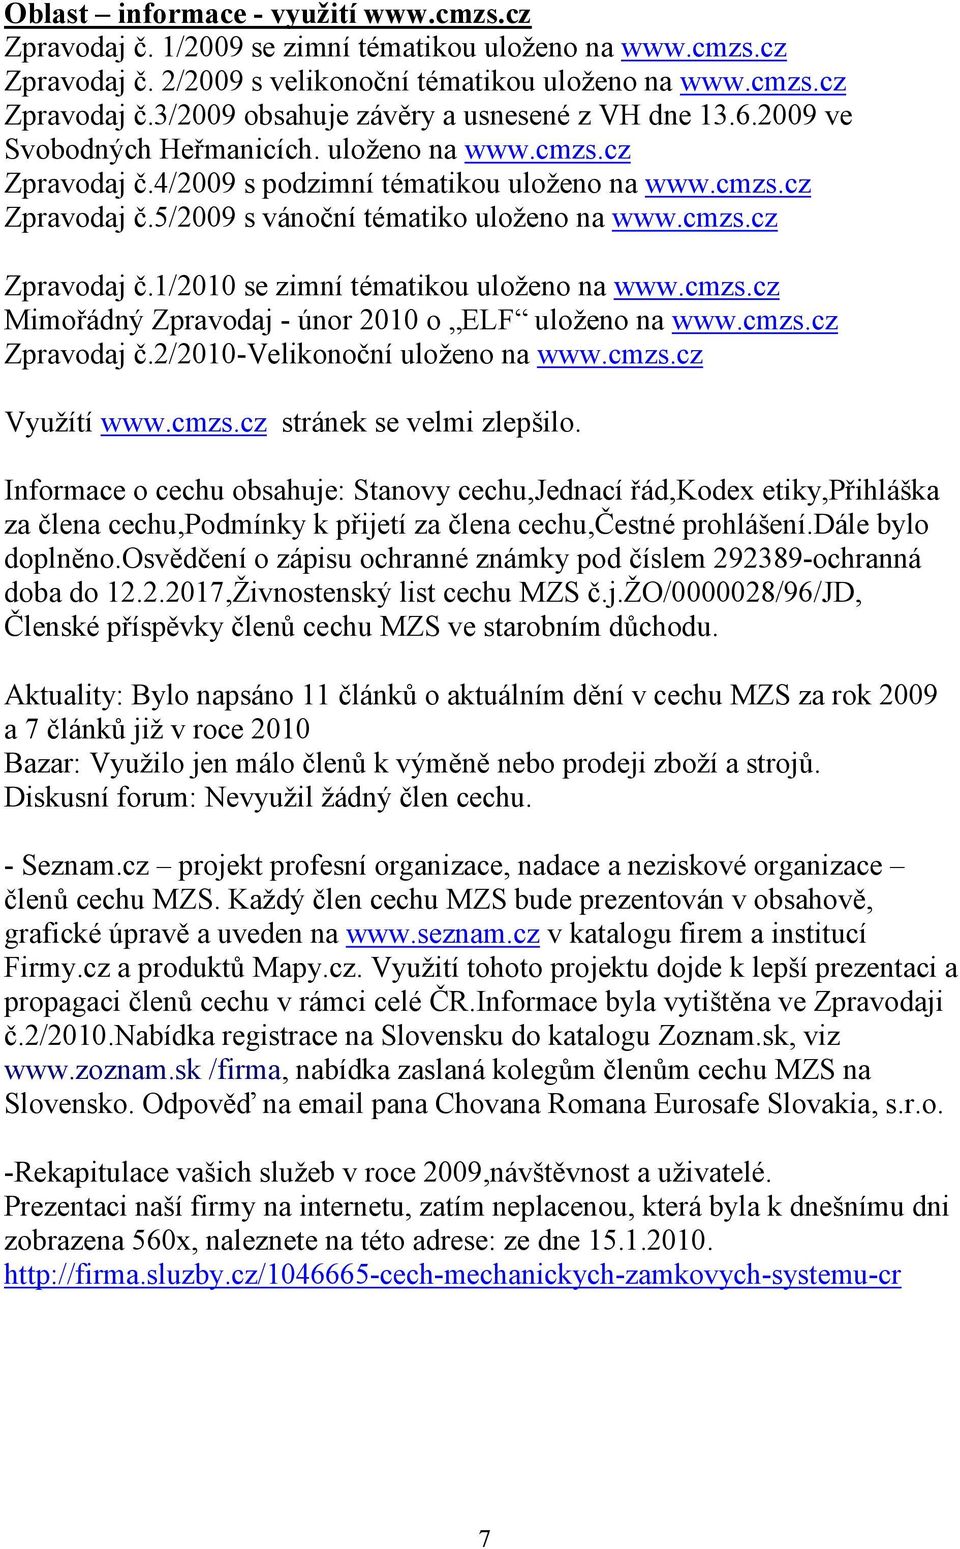 cmzs.cz Mimořádný Zpravodaj - únor 2010 o ELF uloženo na www.cmzs.cz Zpravodaj č.2/2010-velikonoční uloženo na www.cmzs.cz Využítí www.cmzs.cz stránek se velmi zlepšilo.